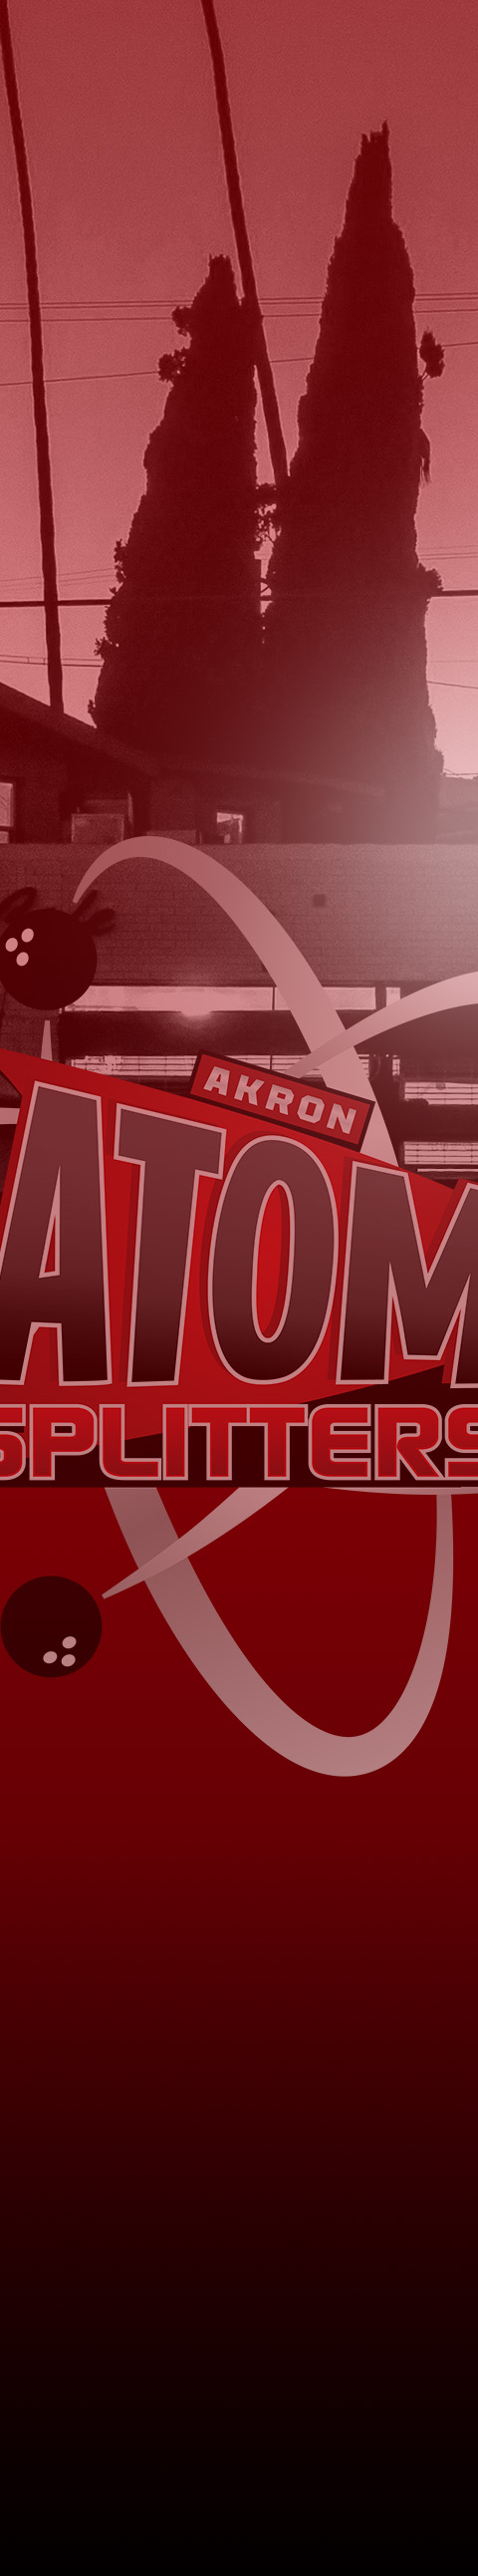 Akron Atom Splitters Logo